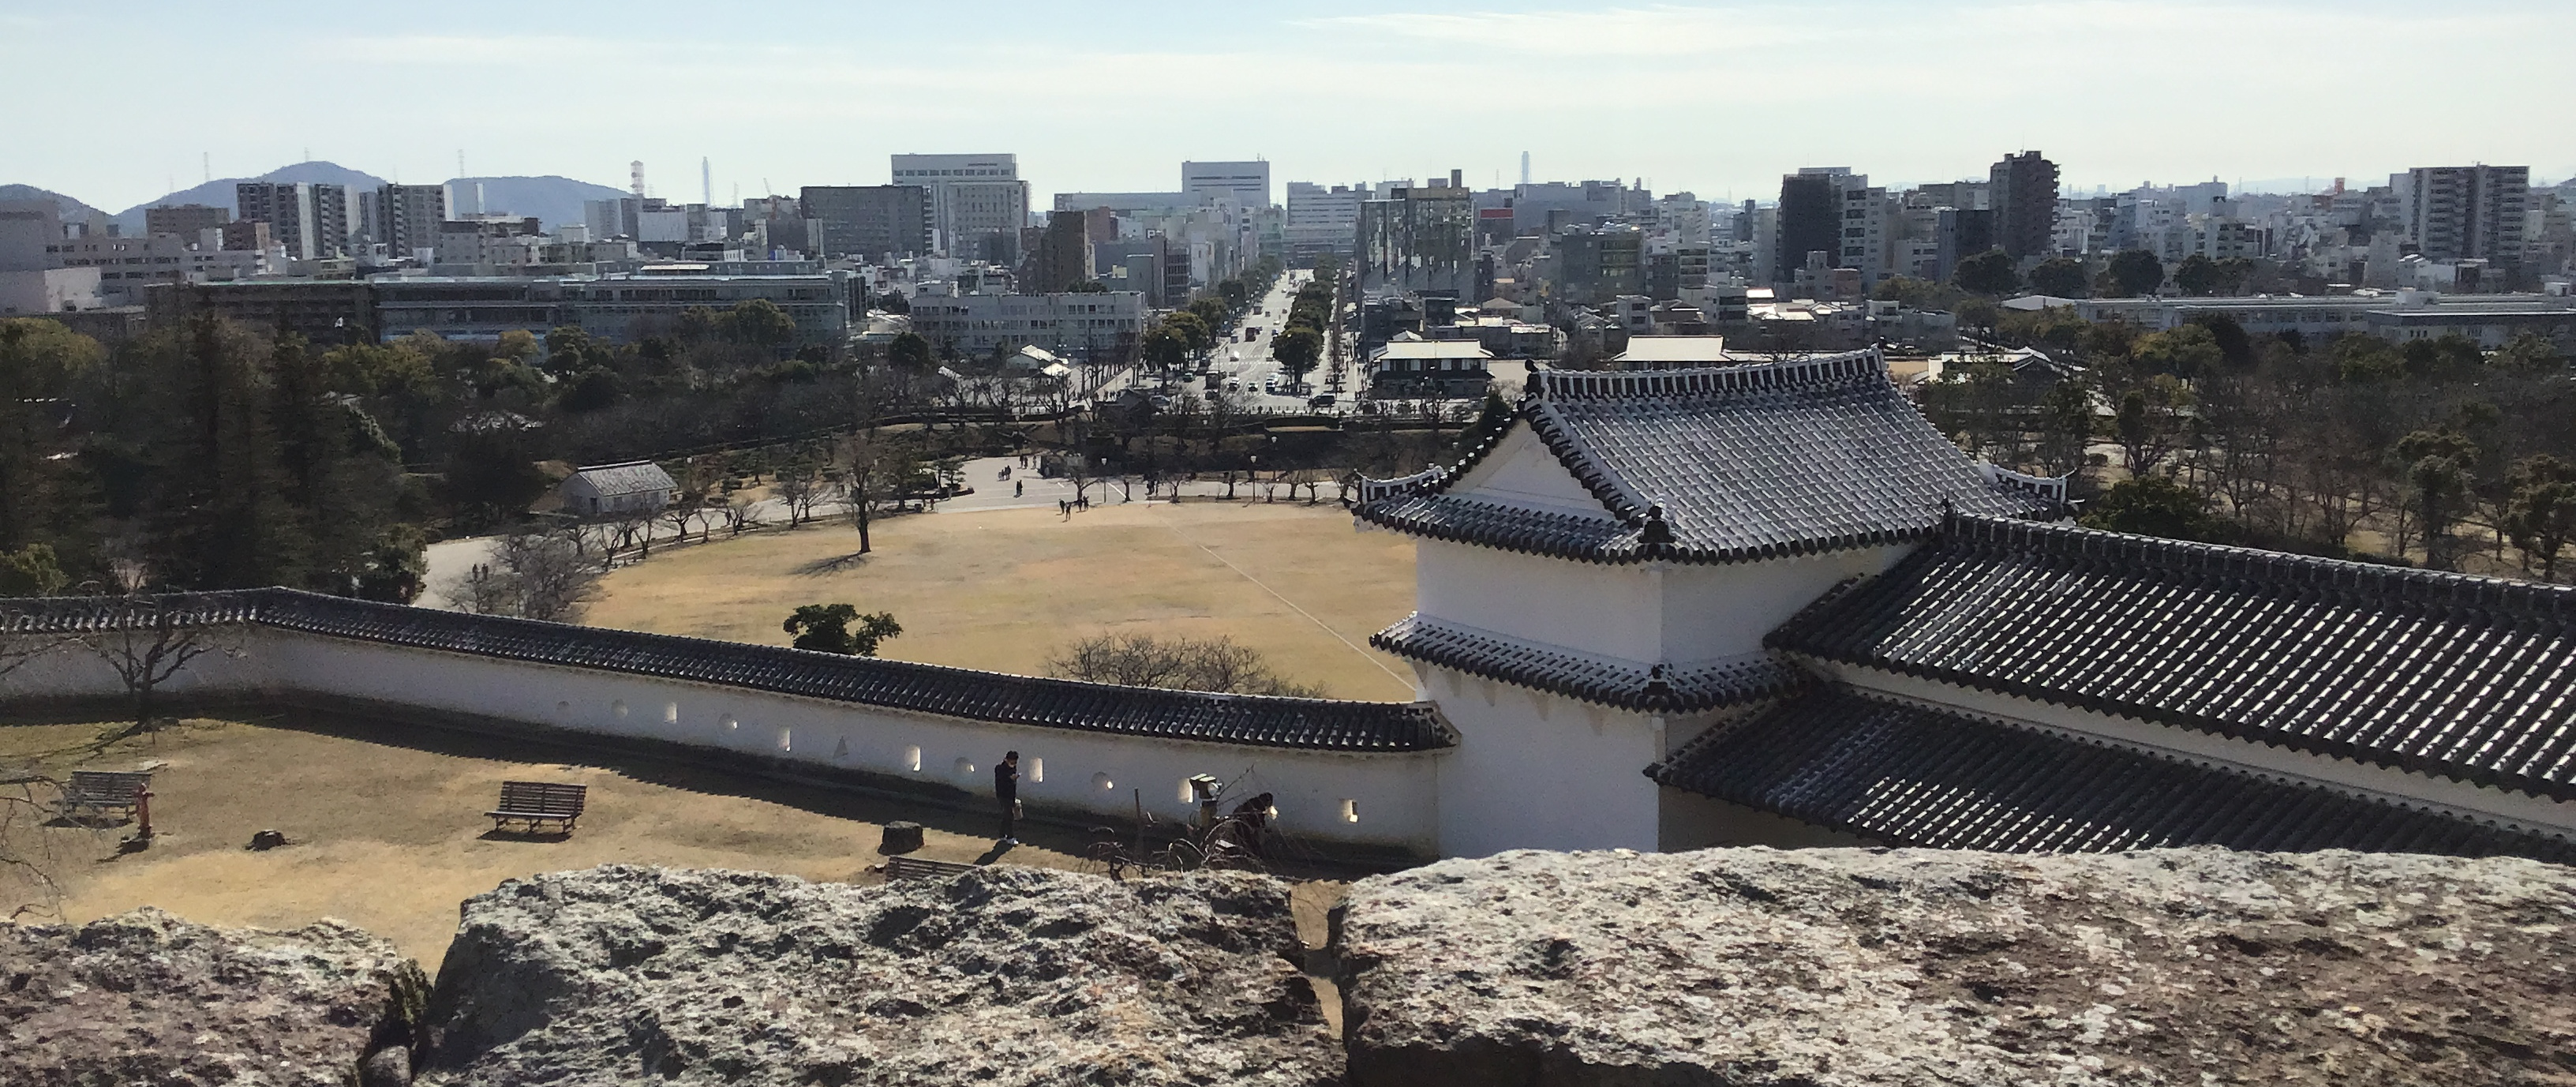 The city outside Himeji Castle